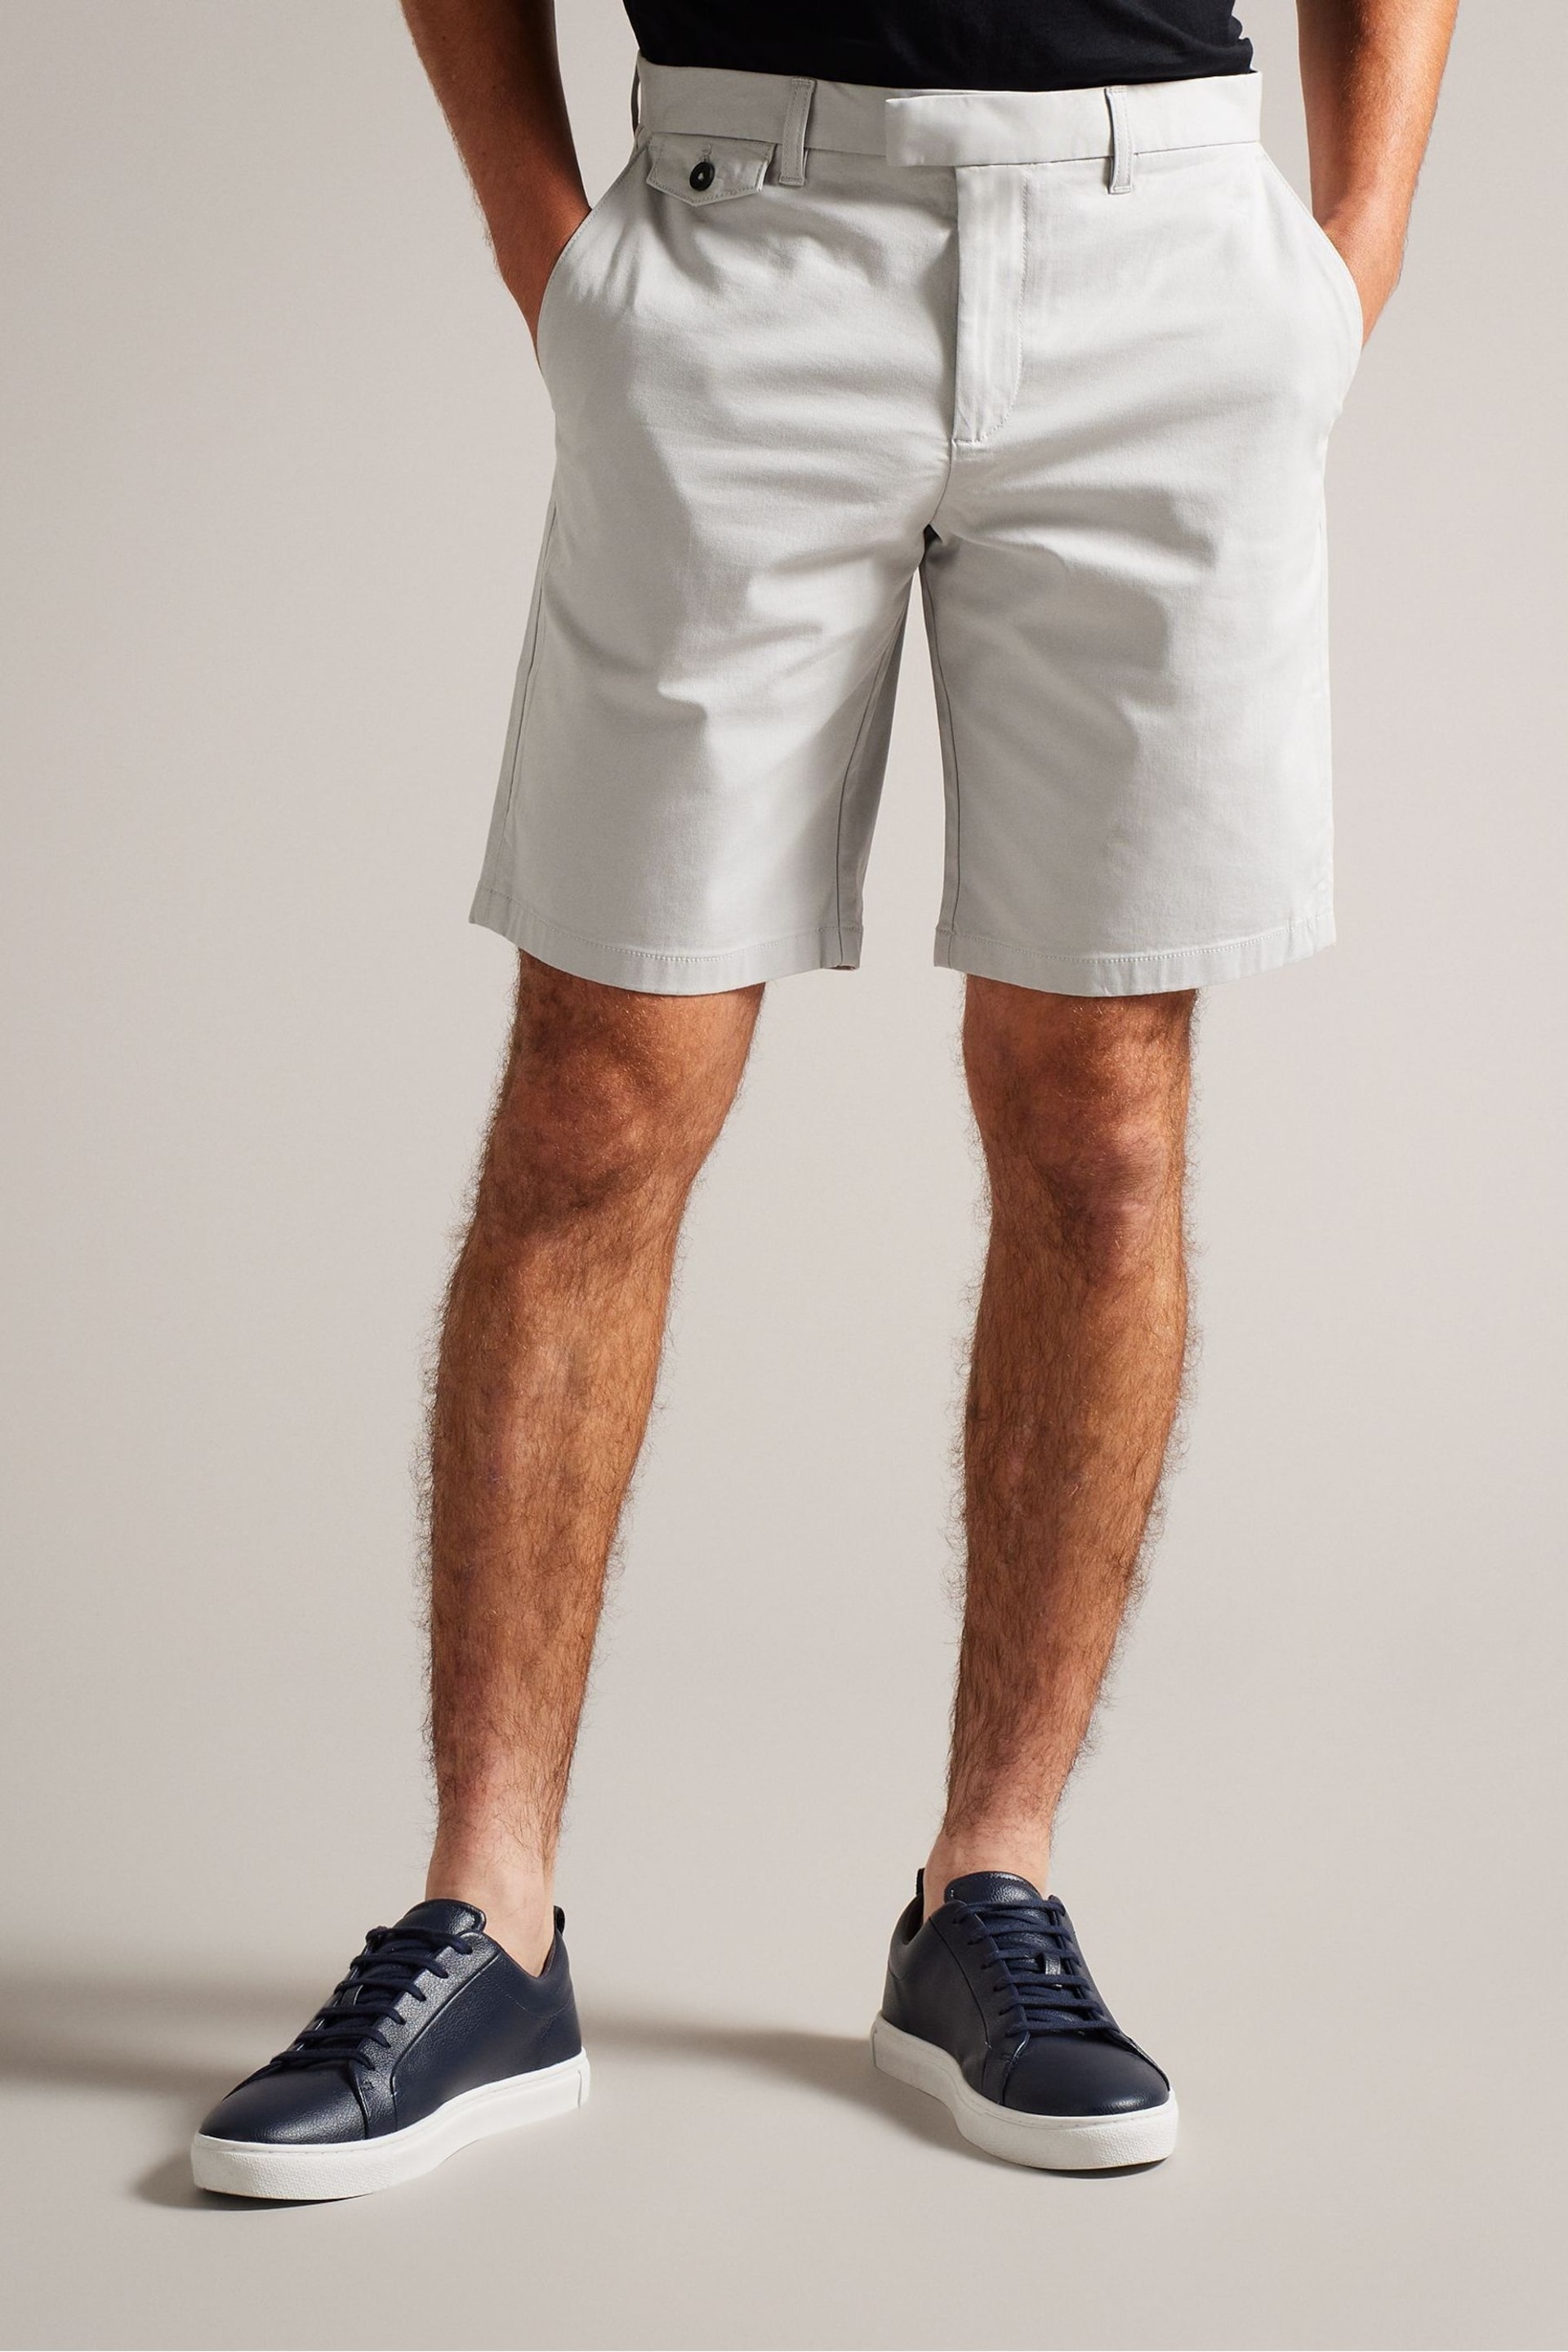 Ted Baker Grey Alscot Chino Shorts - Image 1 of 5